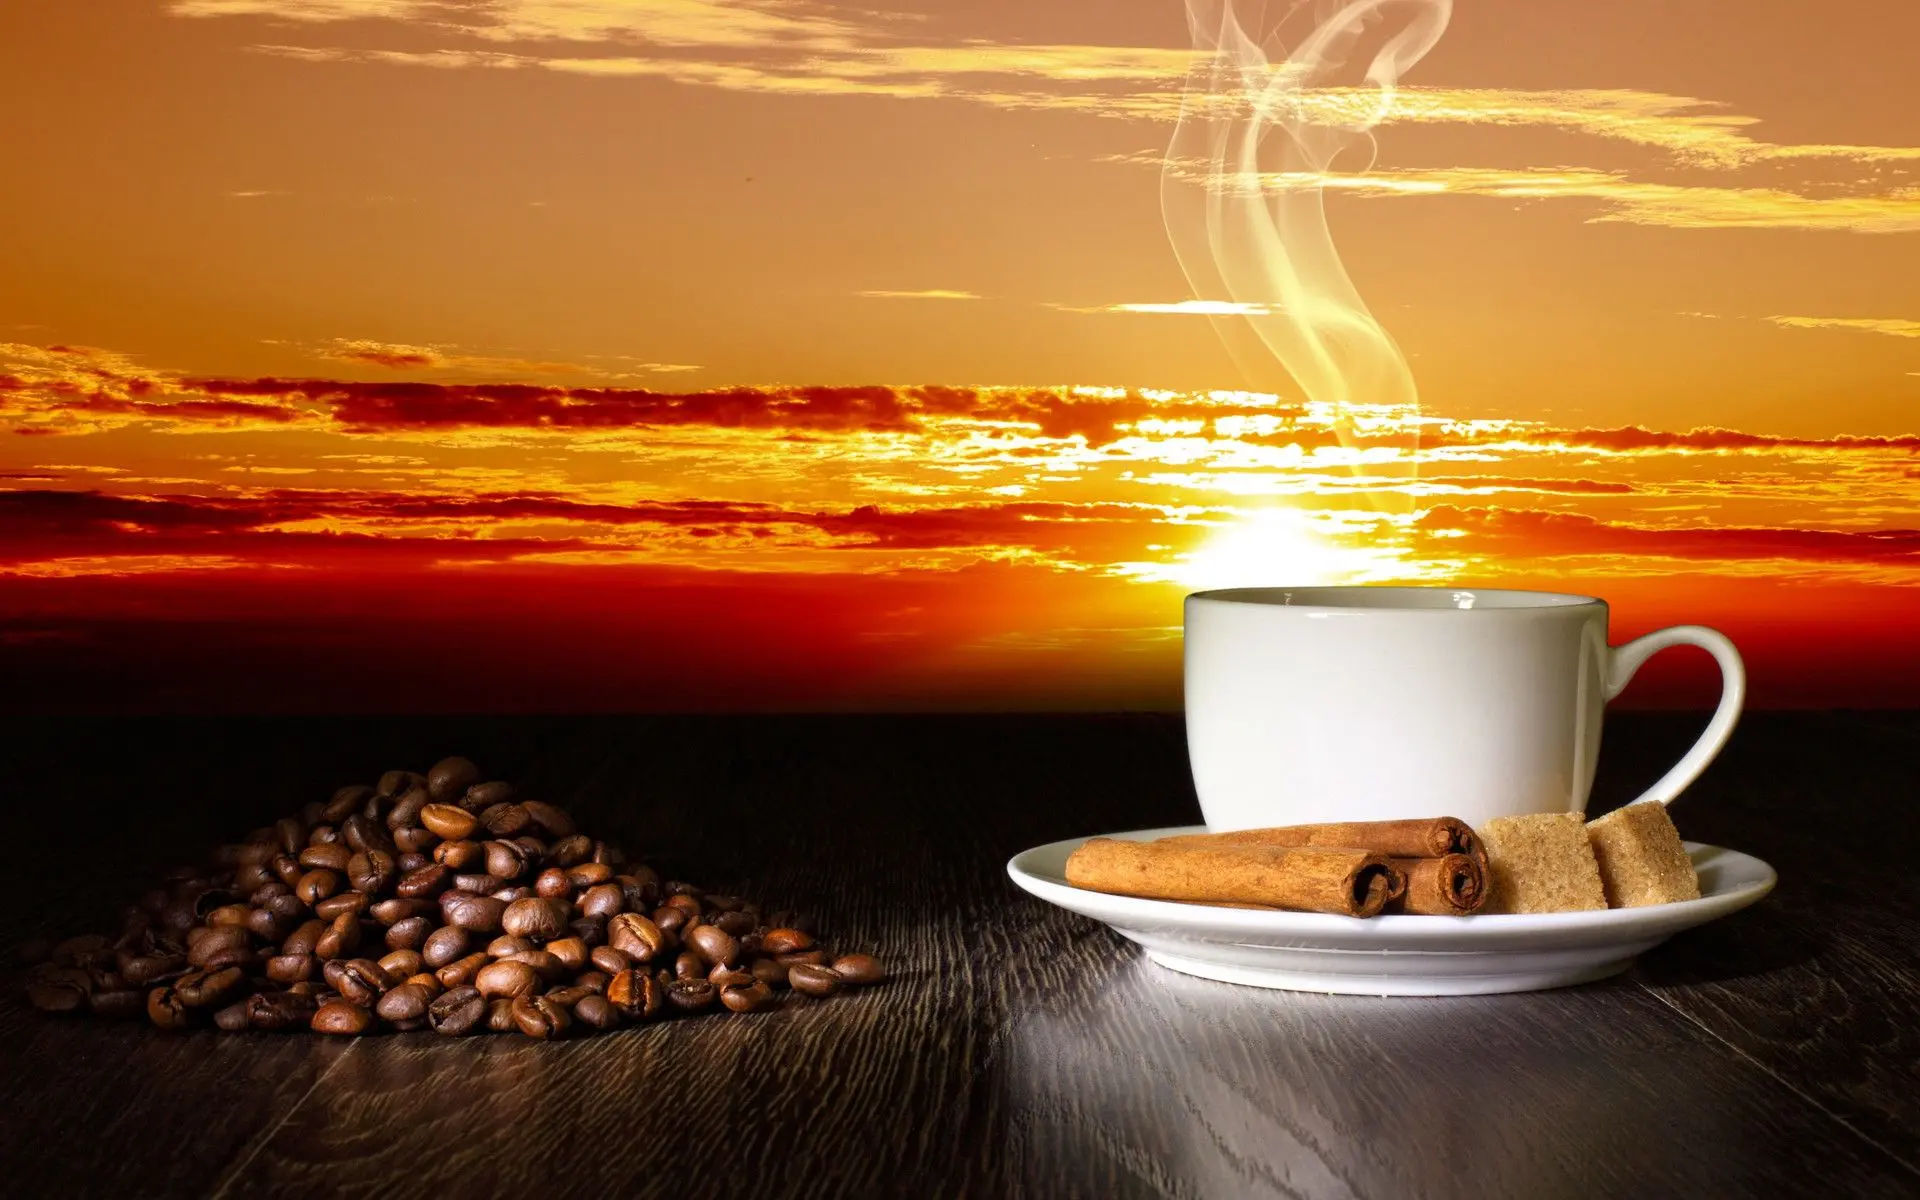 Gambar cangkir kopi - 60 Gambar cangkir kopi yang cantik dan nikmat | Kafe, Kopi, Waktunya Minum Kopi